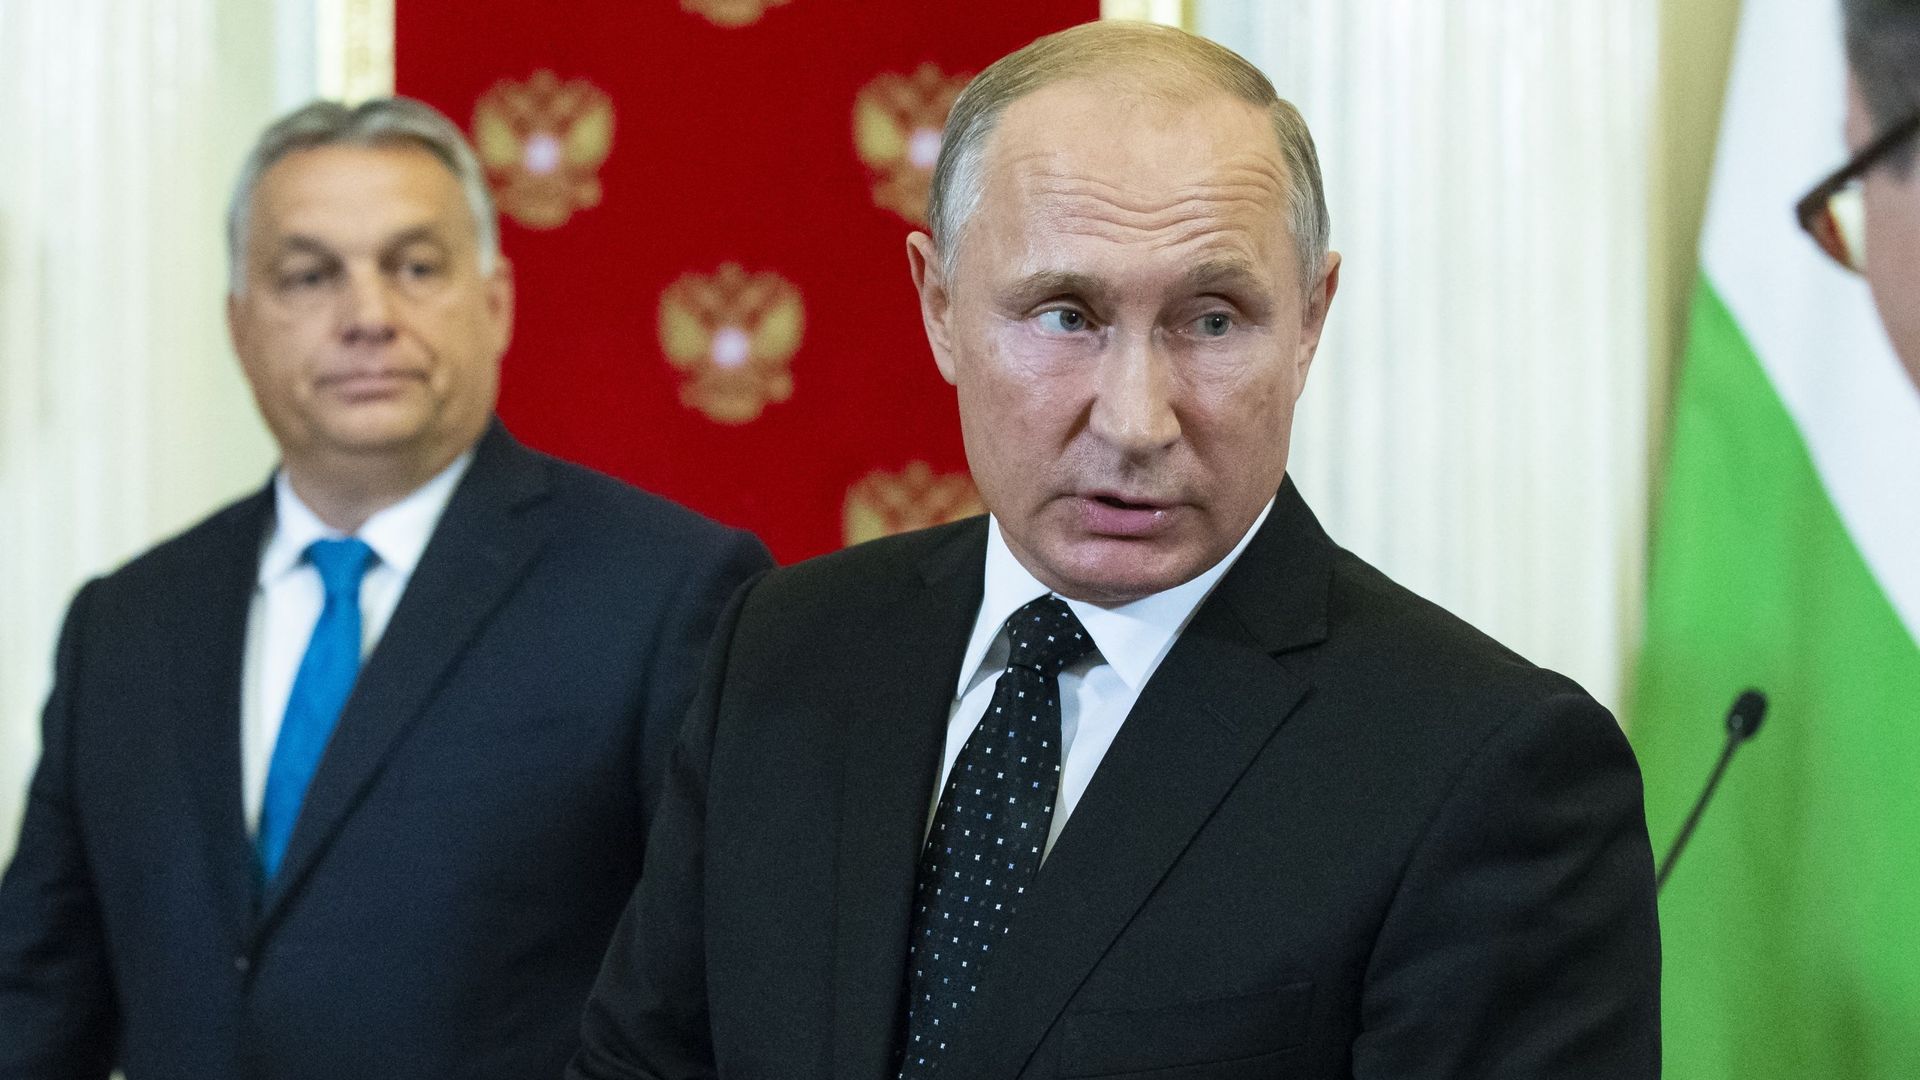 Viktor Orban et Vladimir Poutine à Moscou en septembre 2018 (illustration)